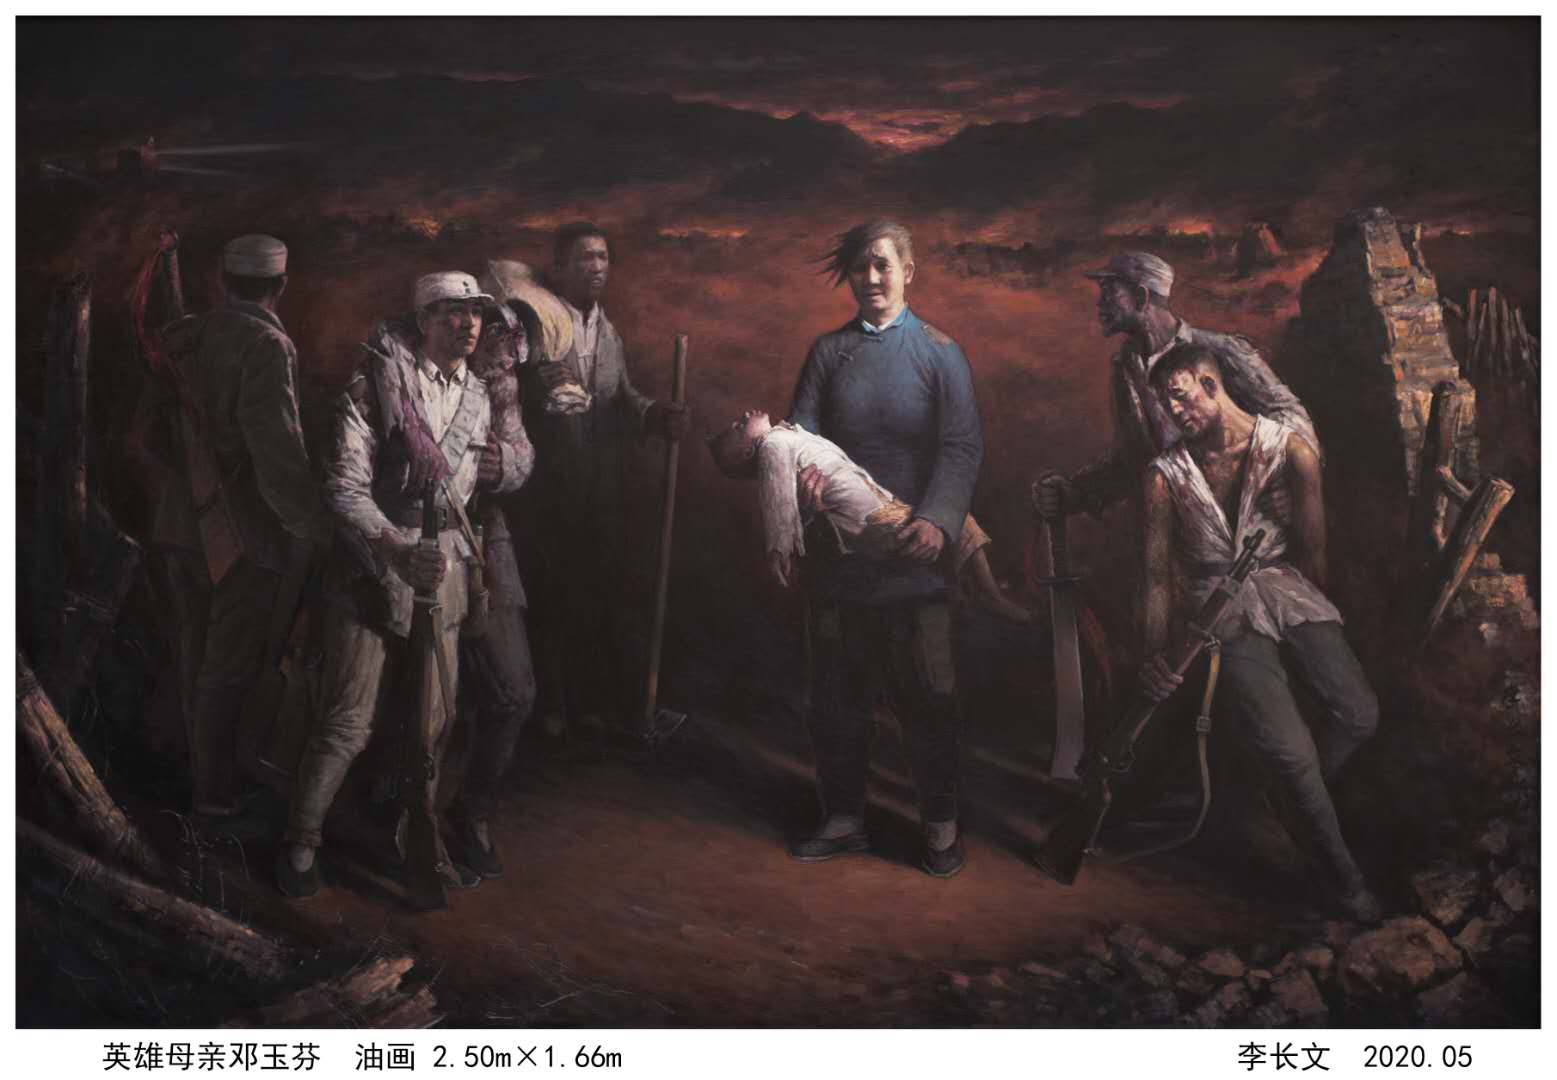 抗戰題材油畫《英雄母親鄧玉芬》亮相北京